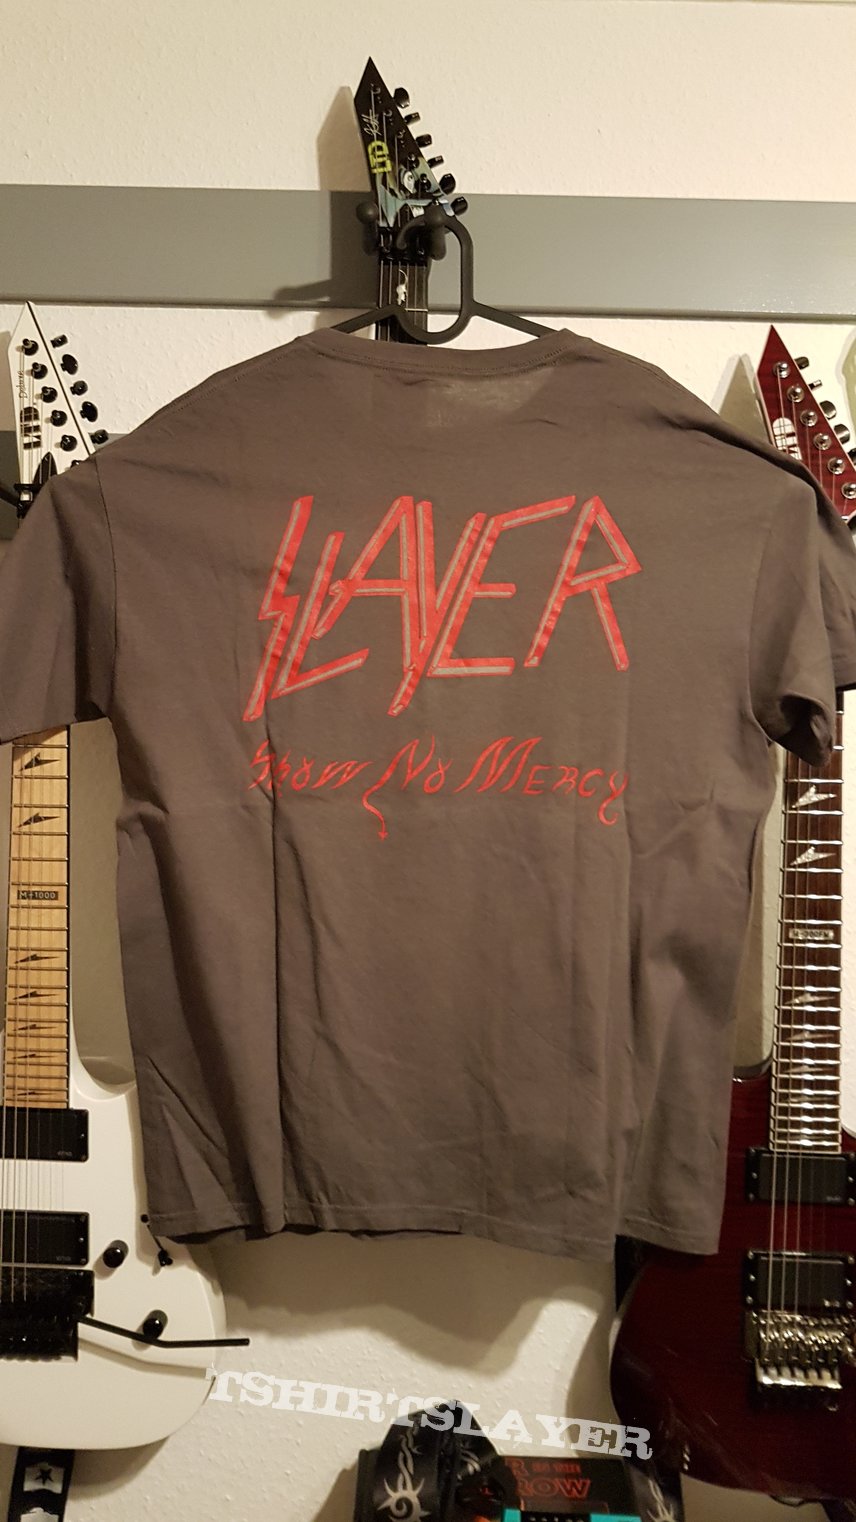 Slayer Show no Mercy TS